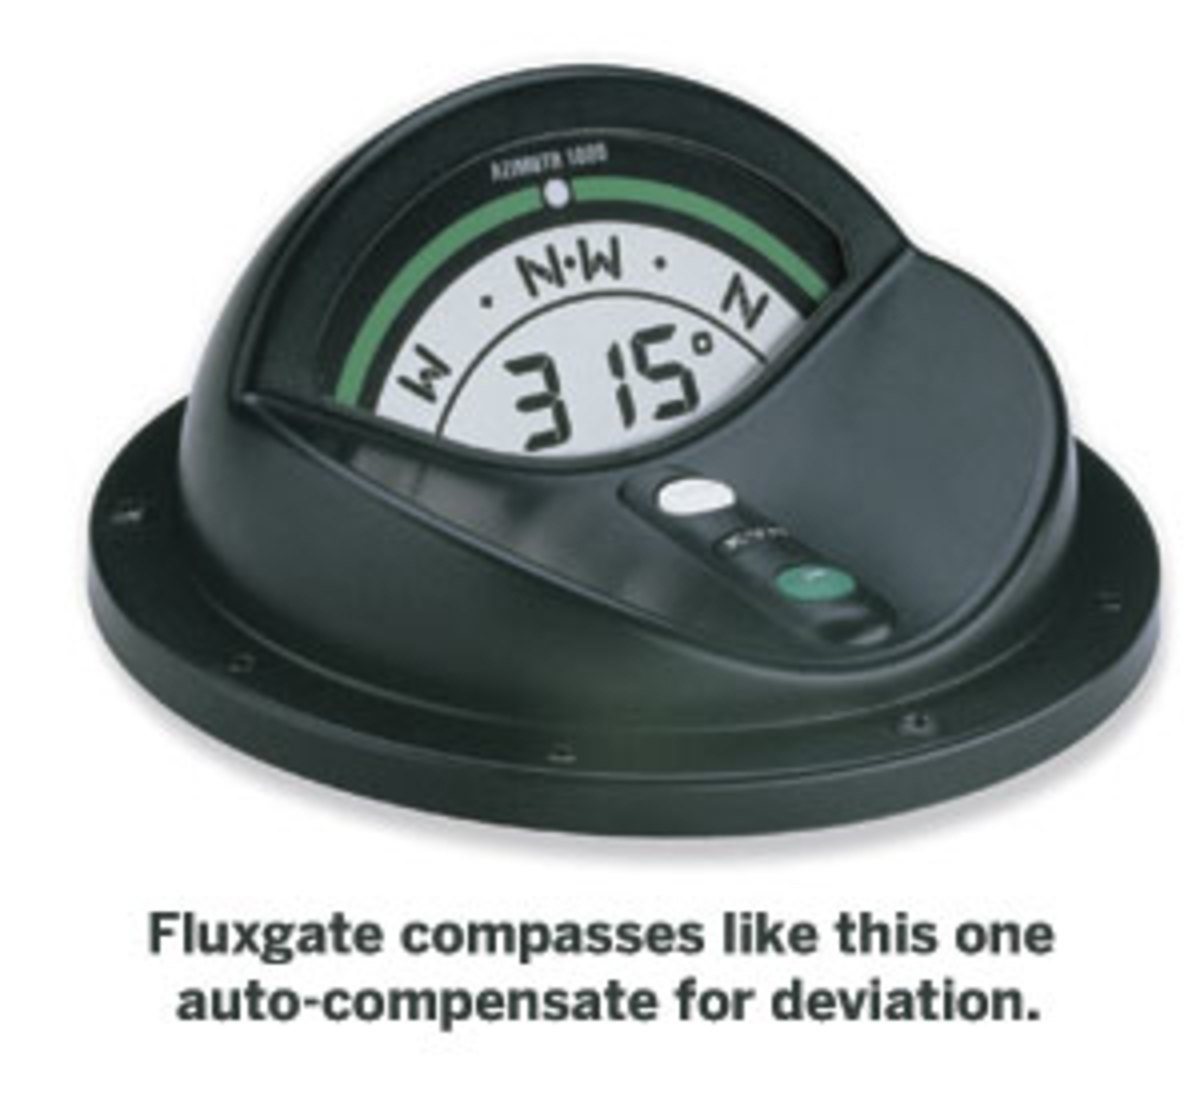 Fluxgate compass